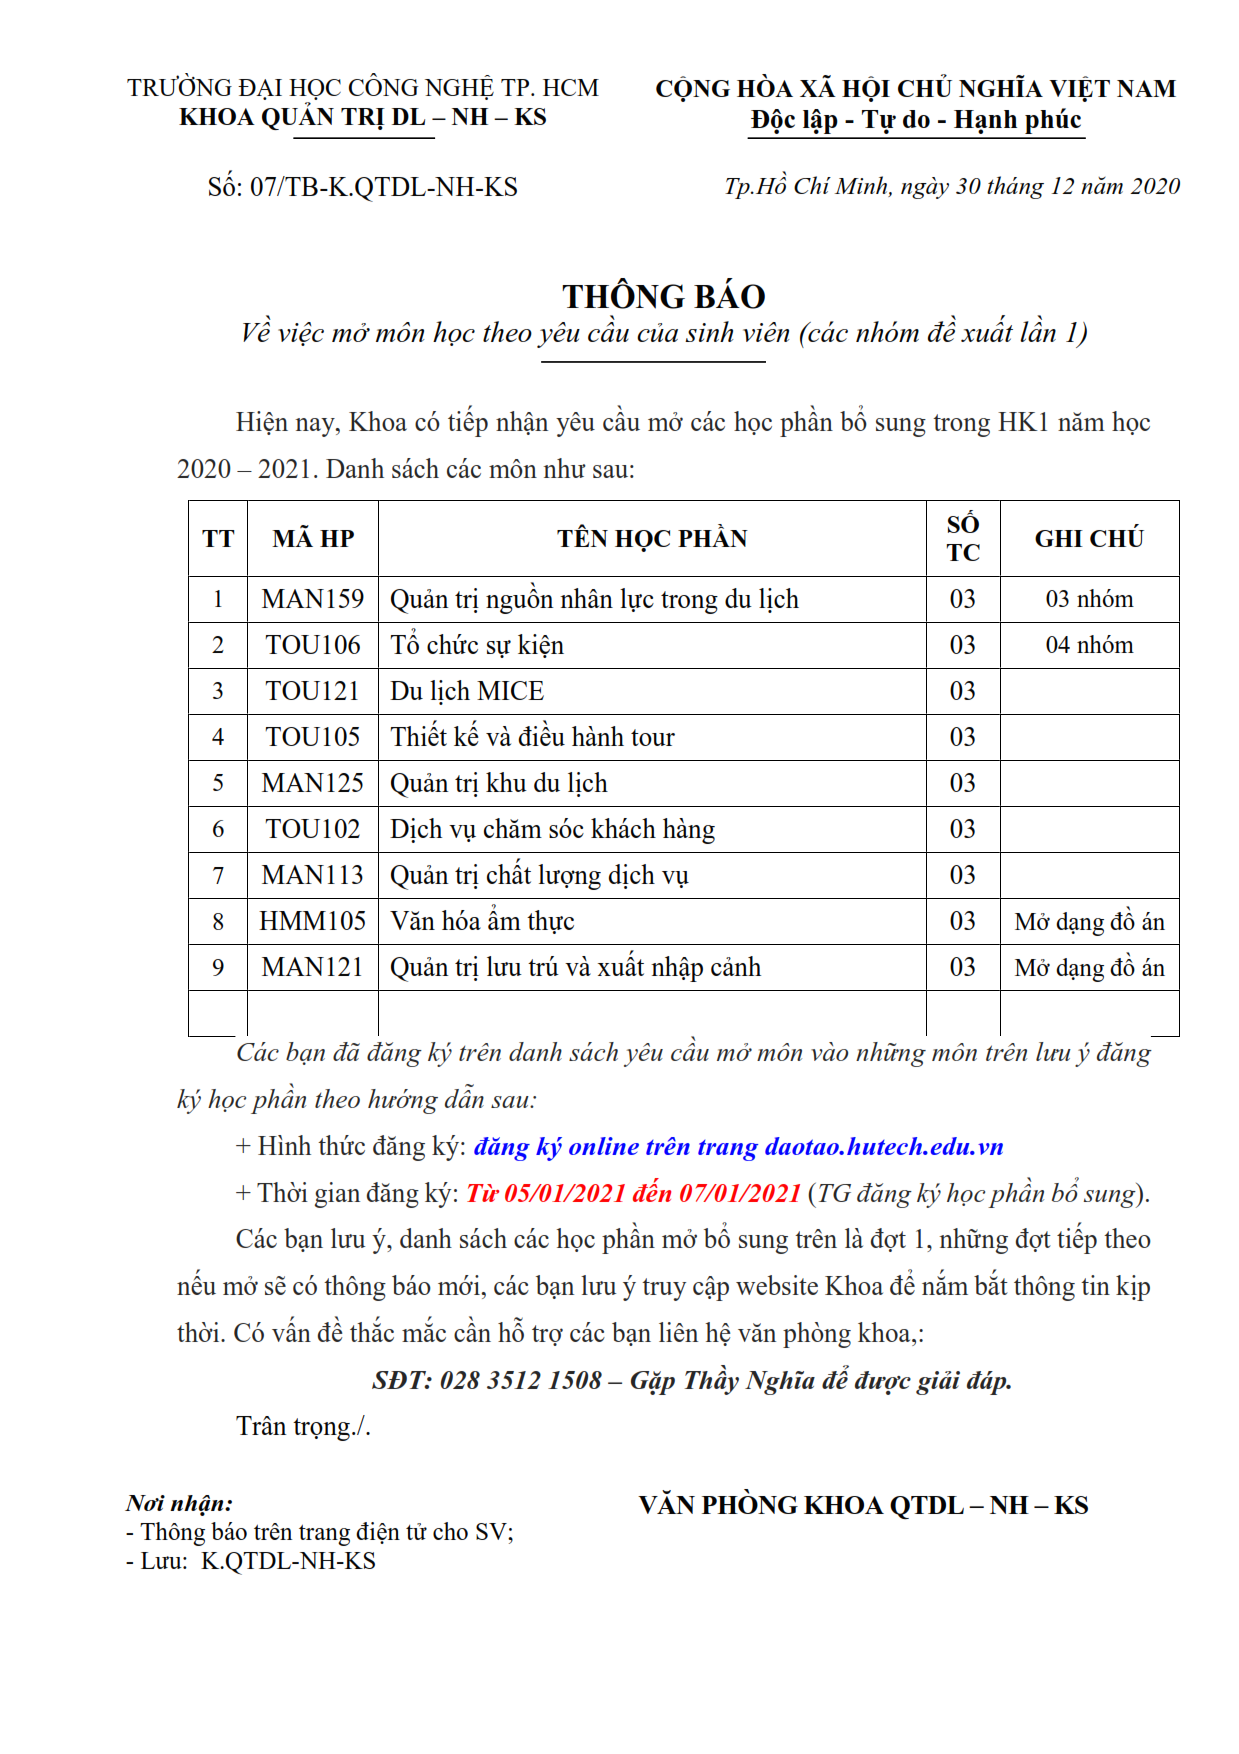 TB số 07/TB-QTDL-NH-KS về việc mở các môn theo yêu cầu trong HK2 - 2020 - 2021 - Lần 1 2